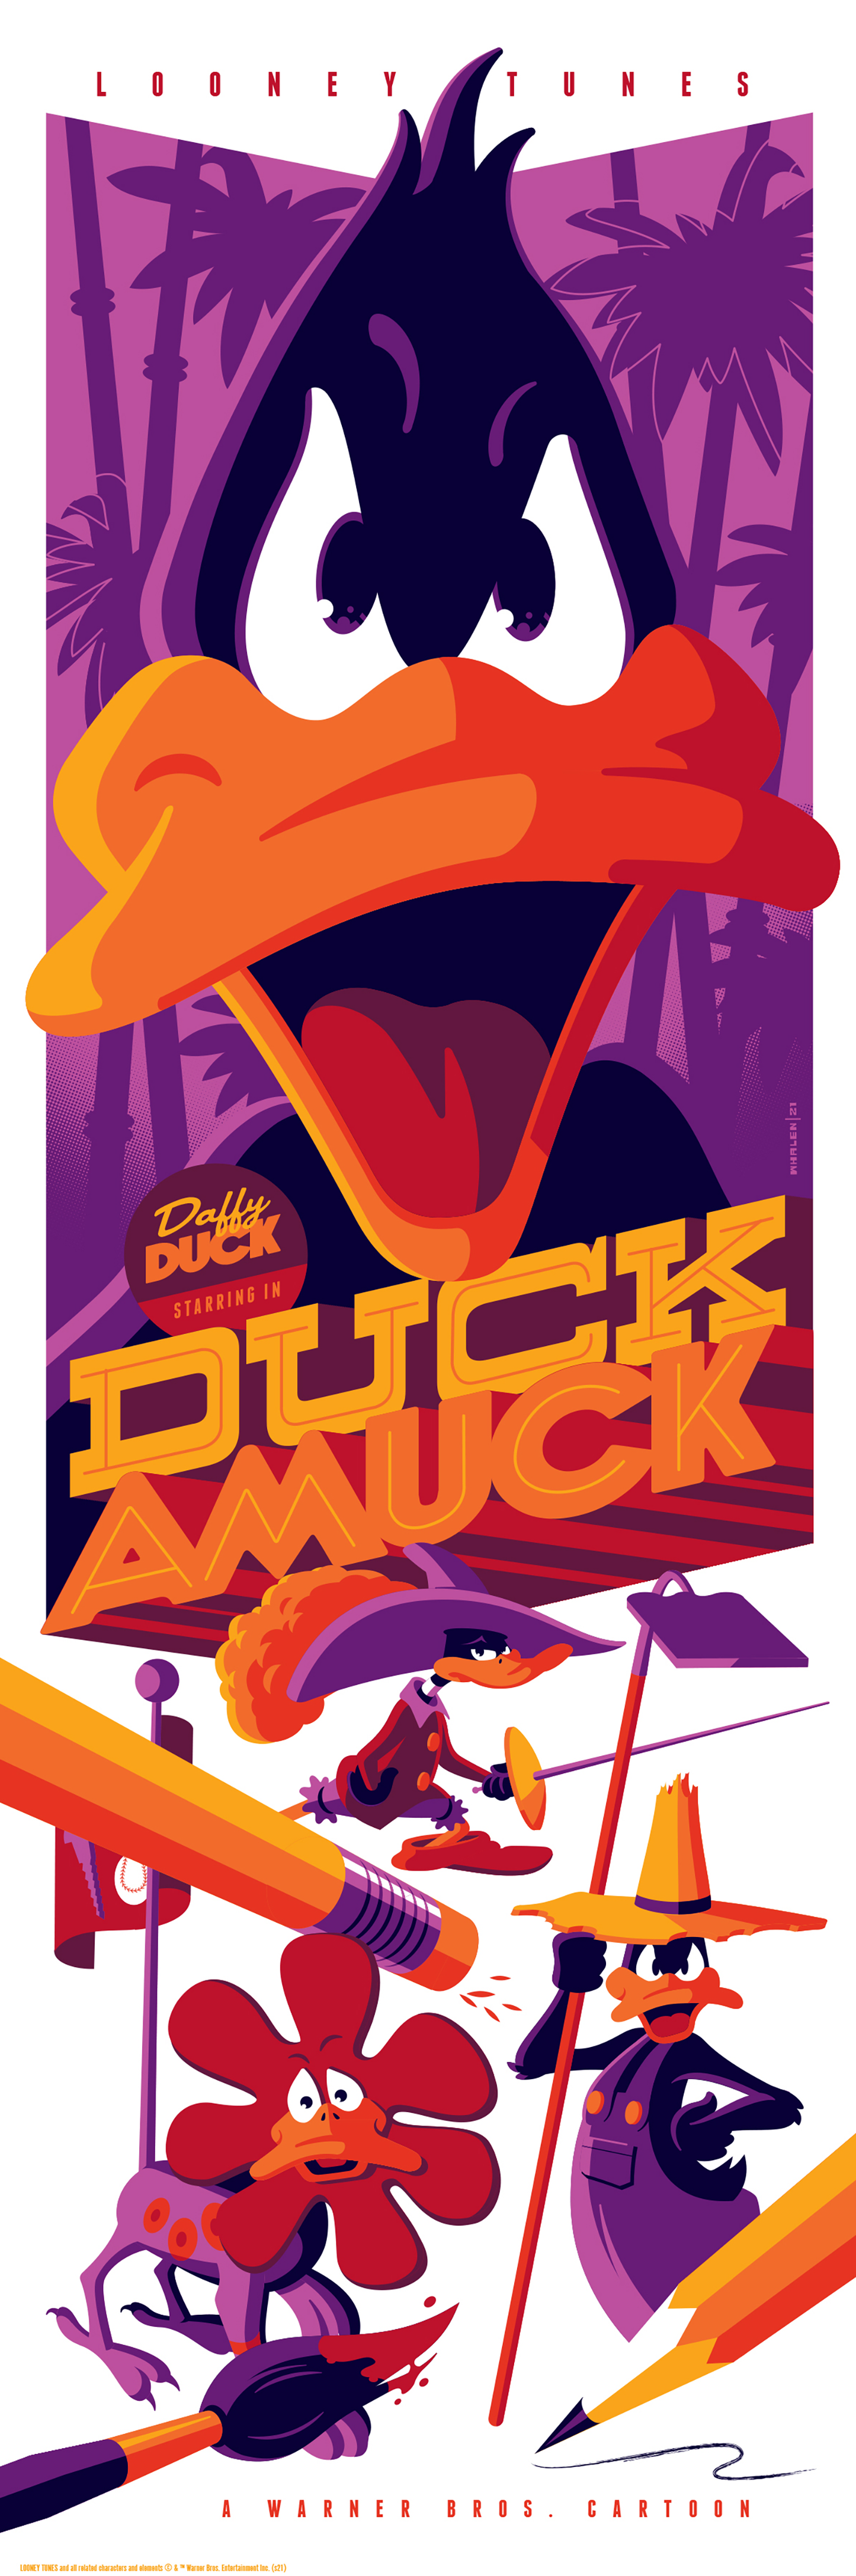 Tom Whalen "Duck Amuck" Variant